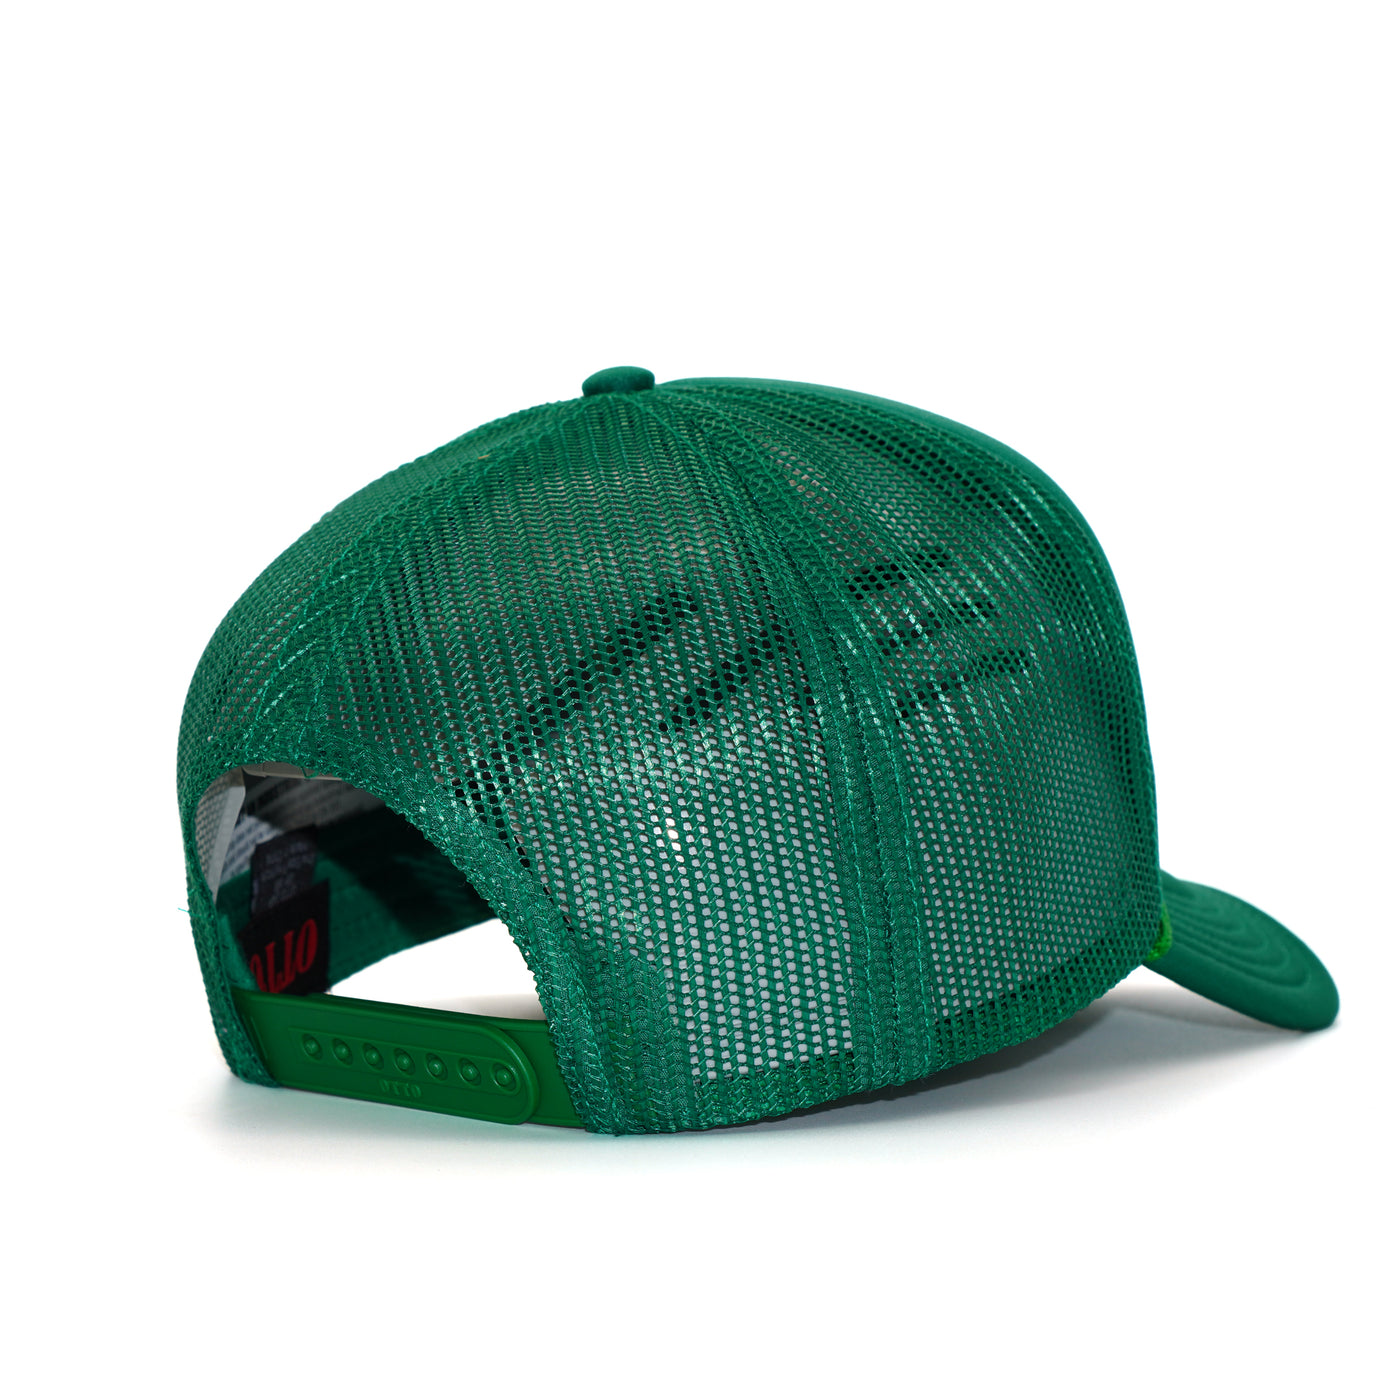 Wally's Green Foam Trucker Hat